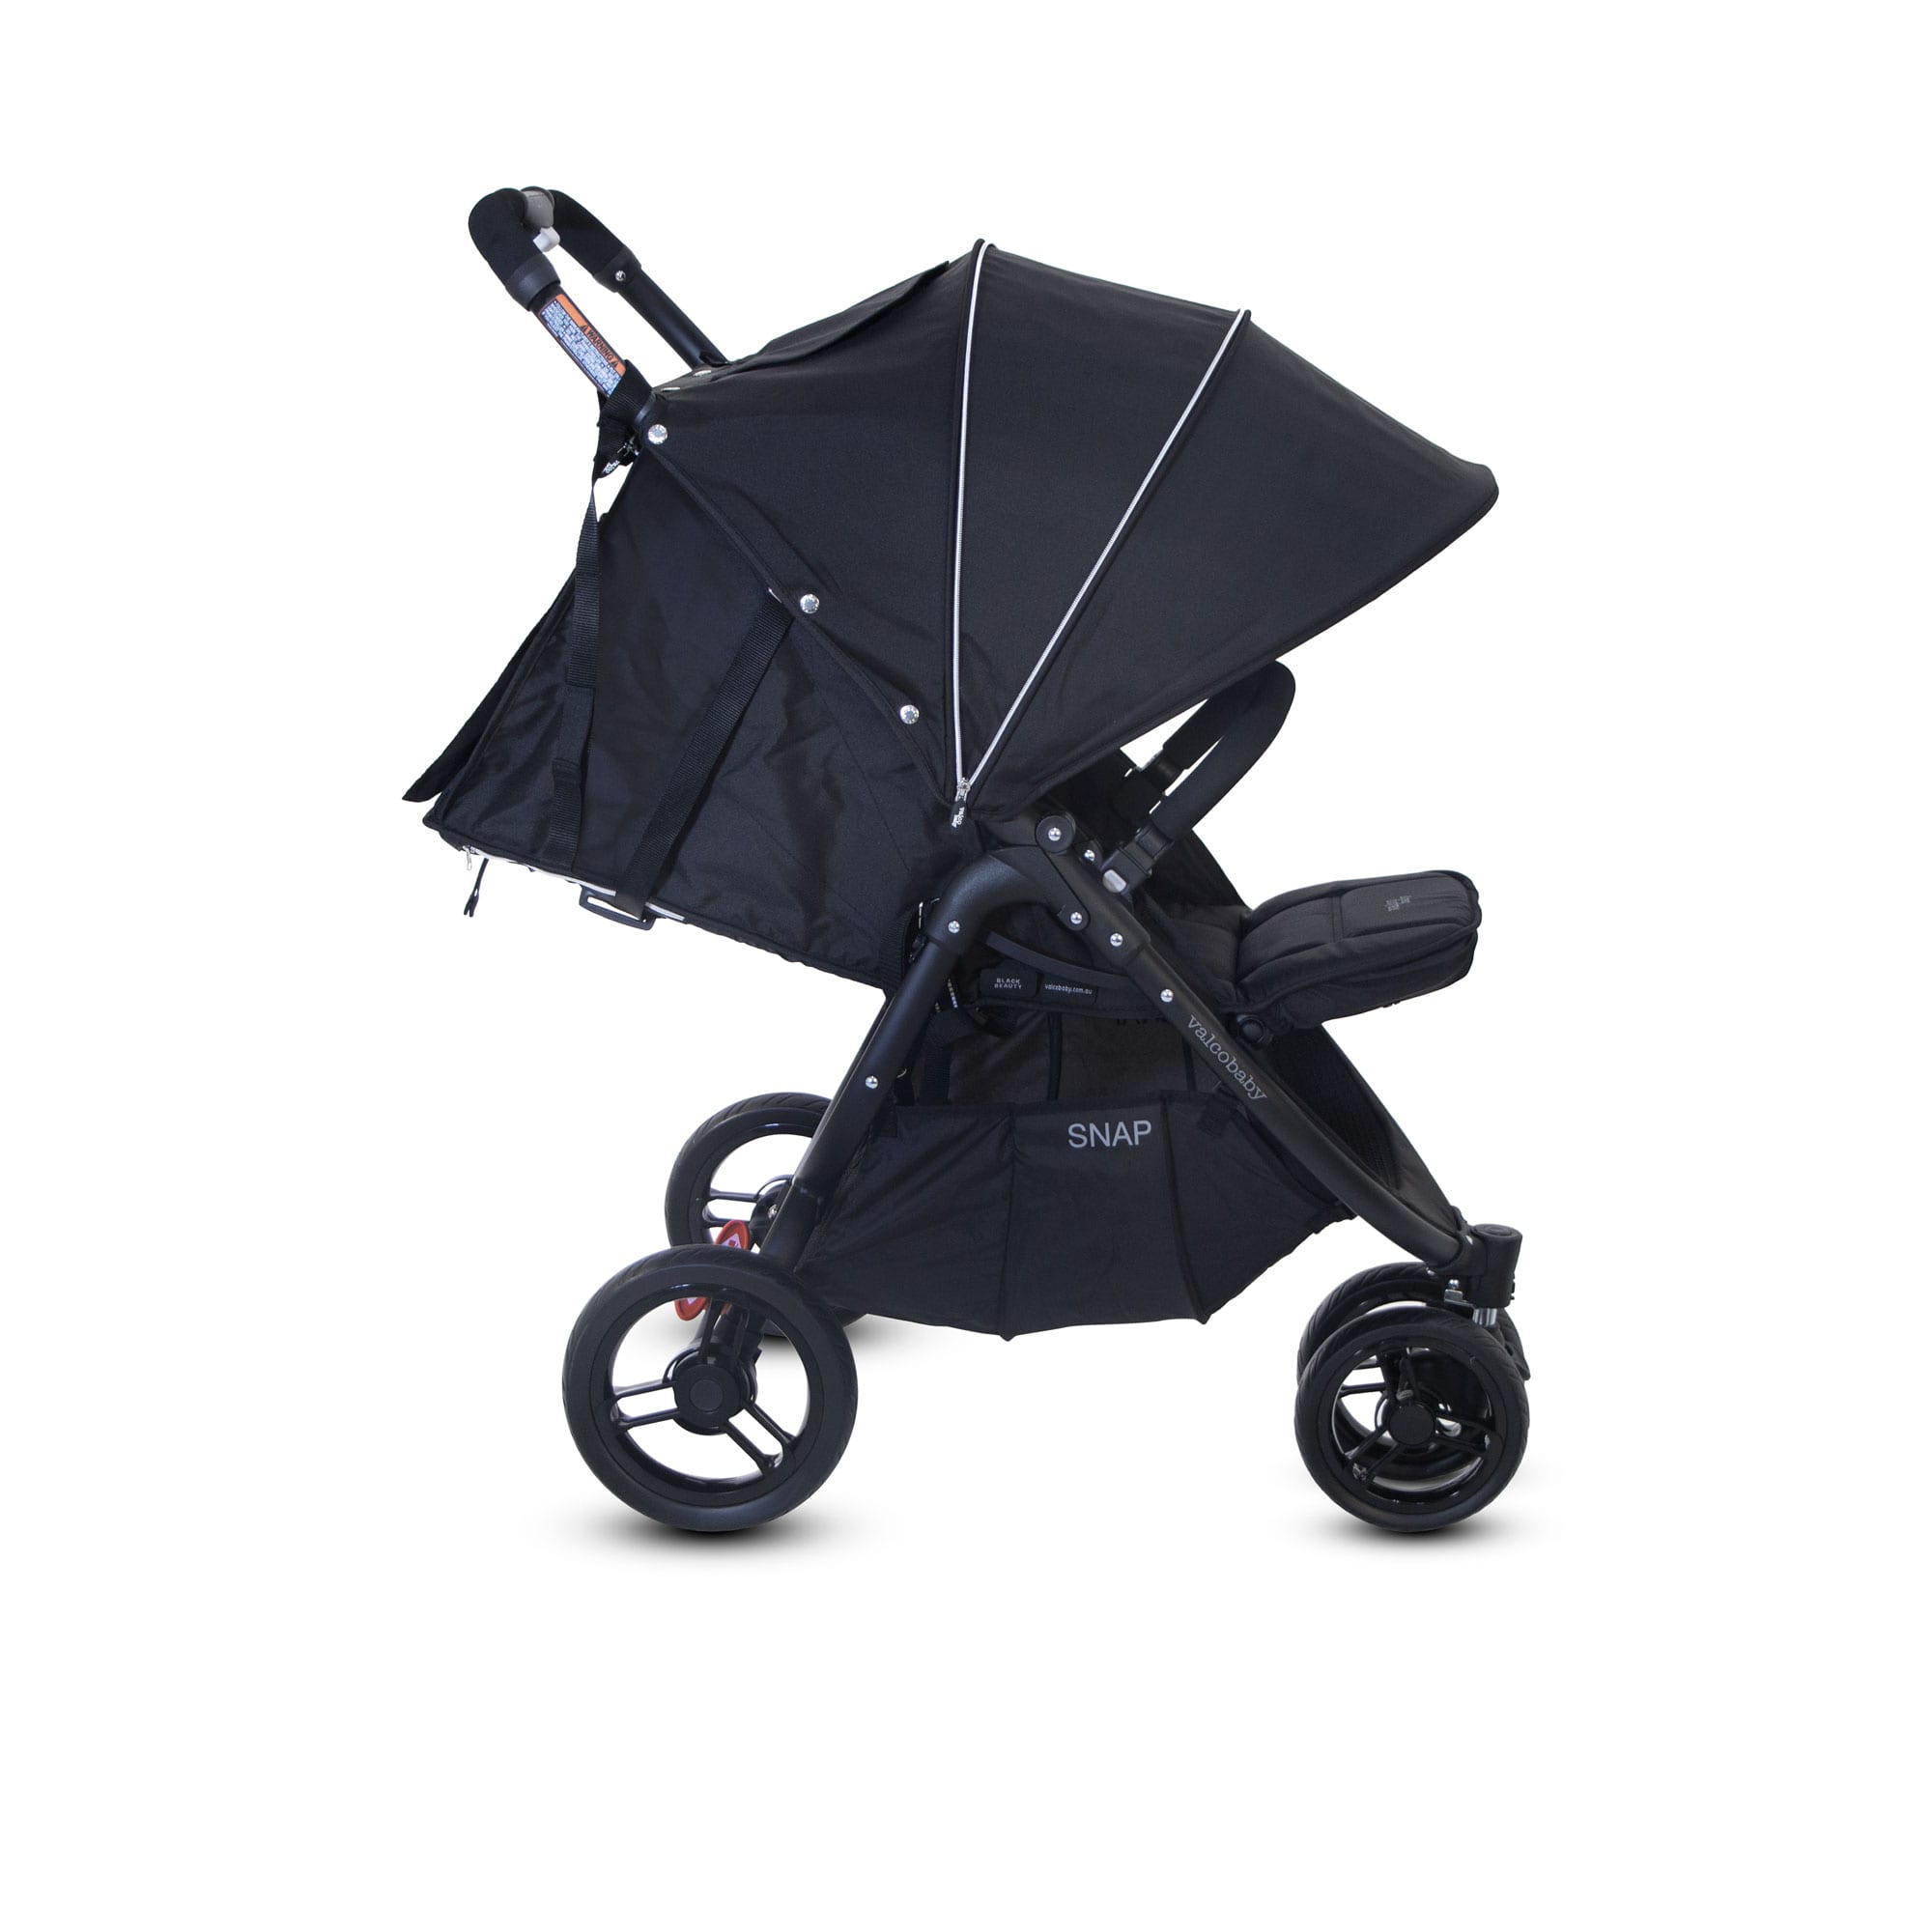 Snap 3 wheel pram and stroller | Valco Baby Australia